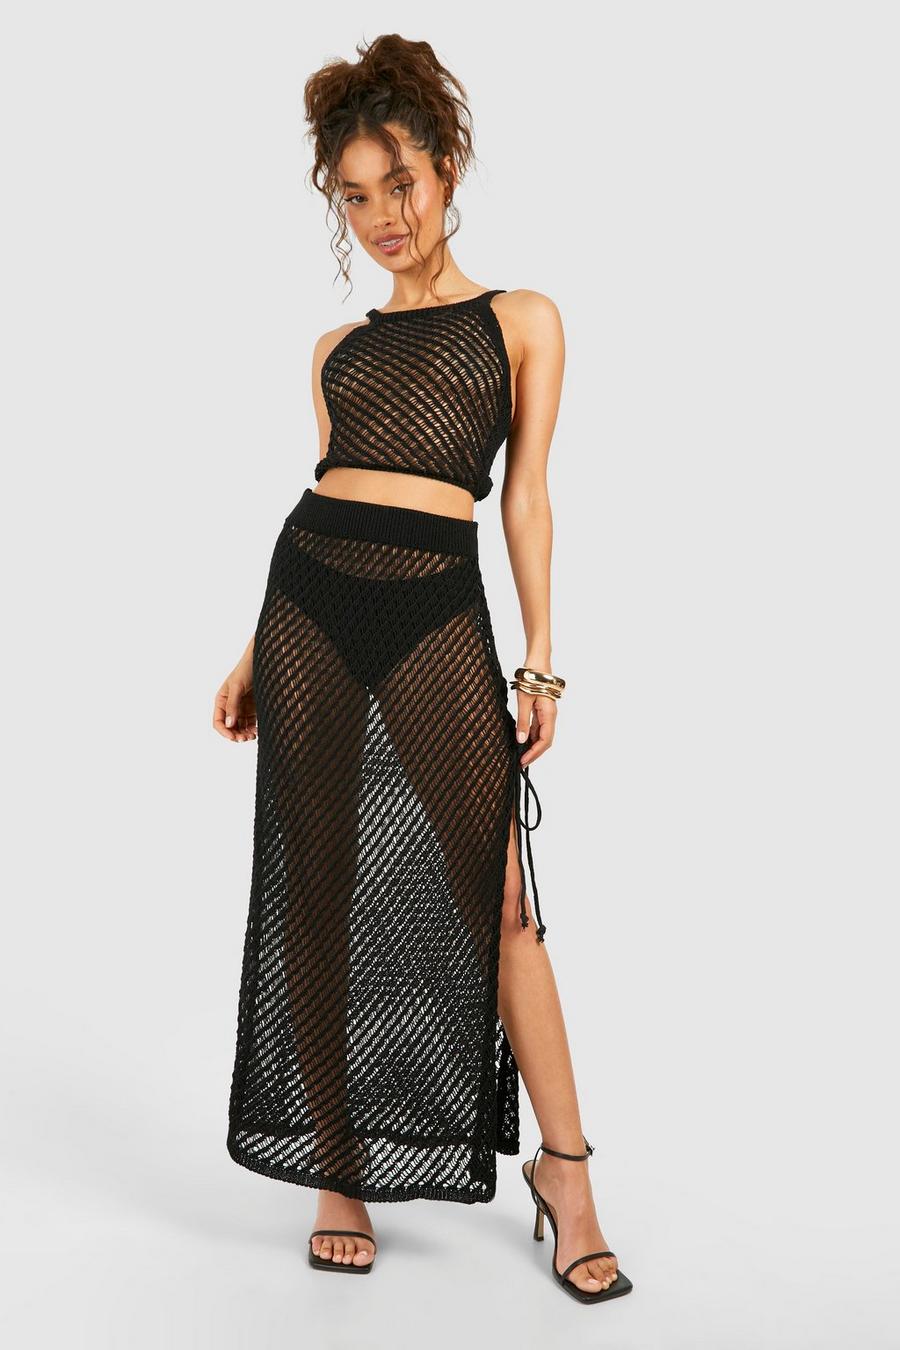 Black Crochet Crop Top And Midaxi Skirt 